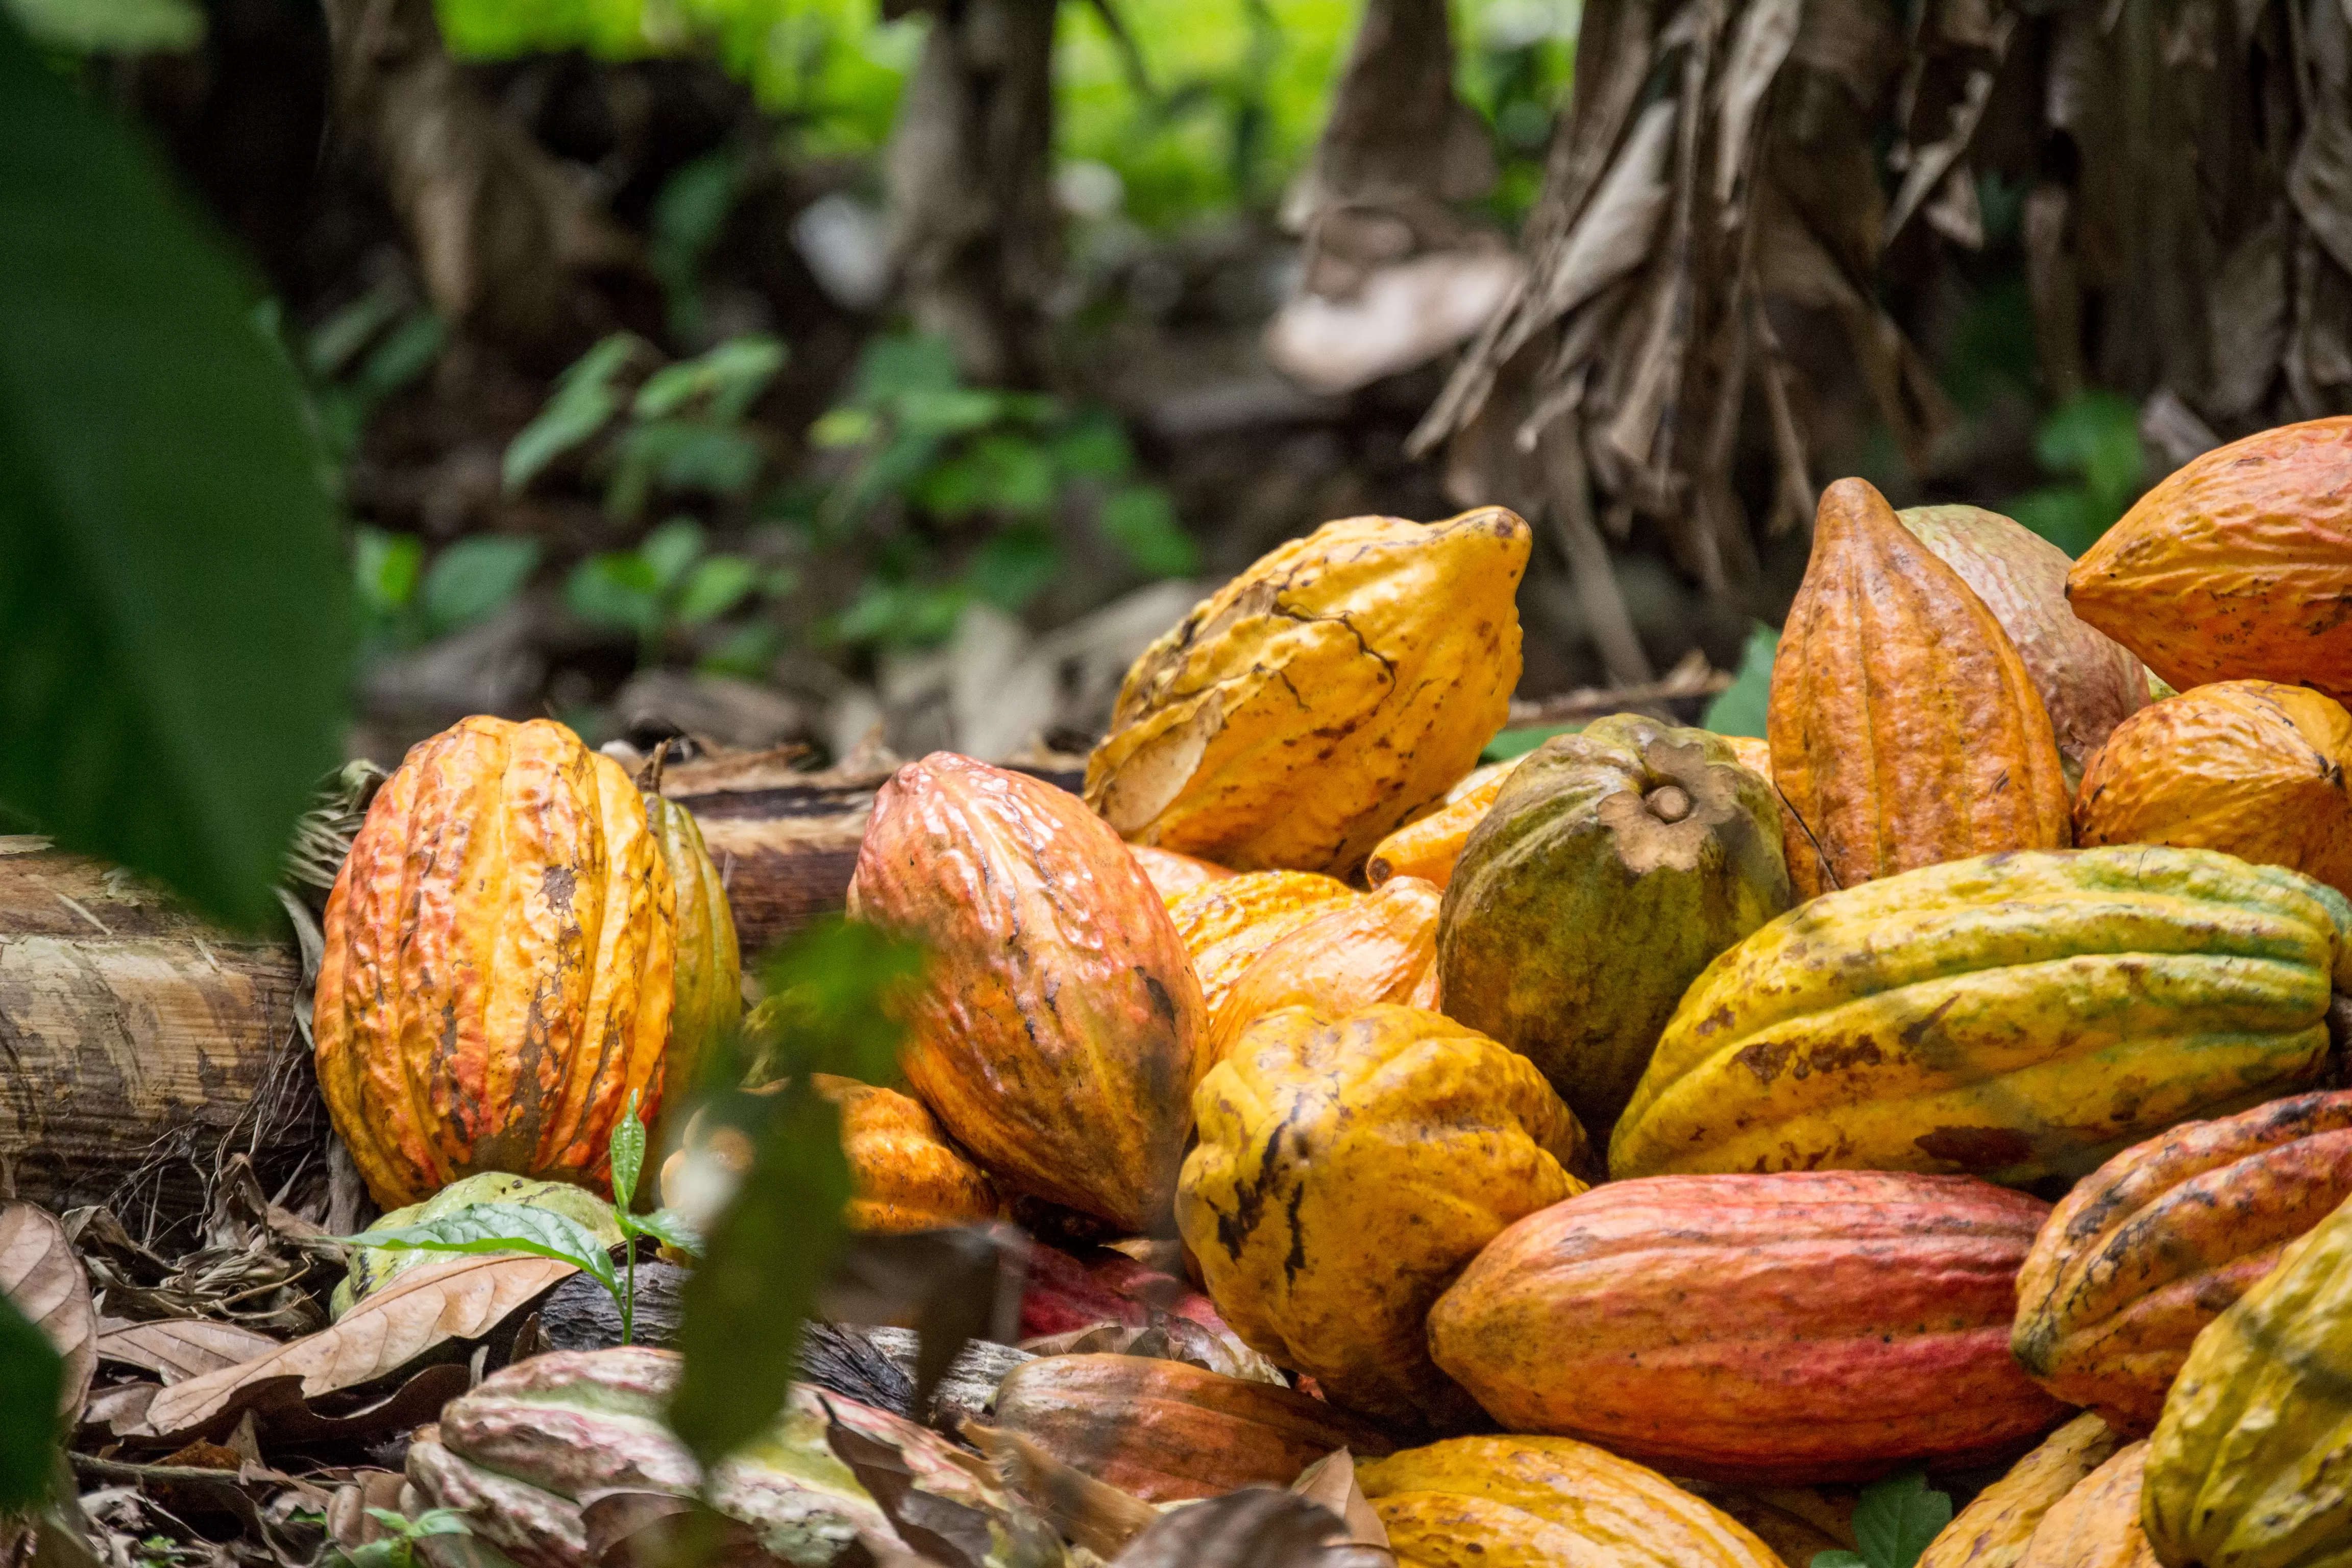 La convocatoria busca ampliar el área de cultivo de cacao en el municipio de Arauca